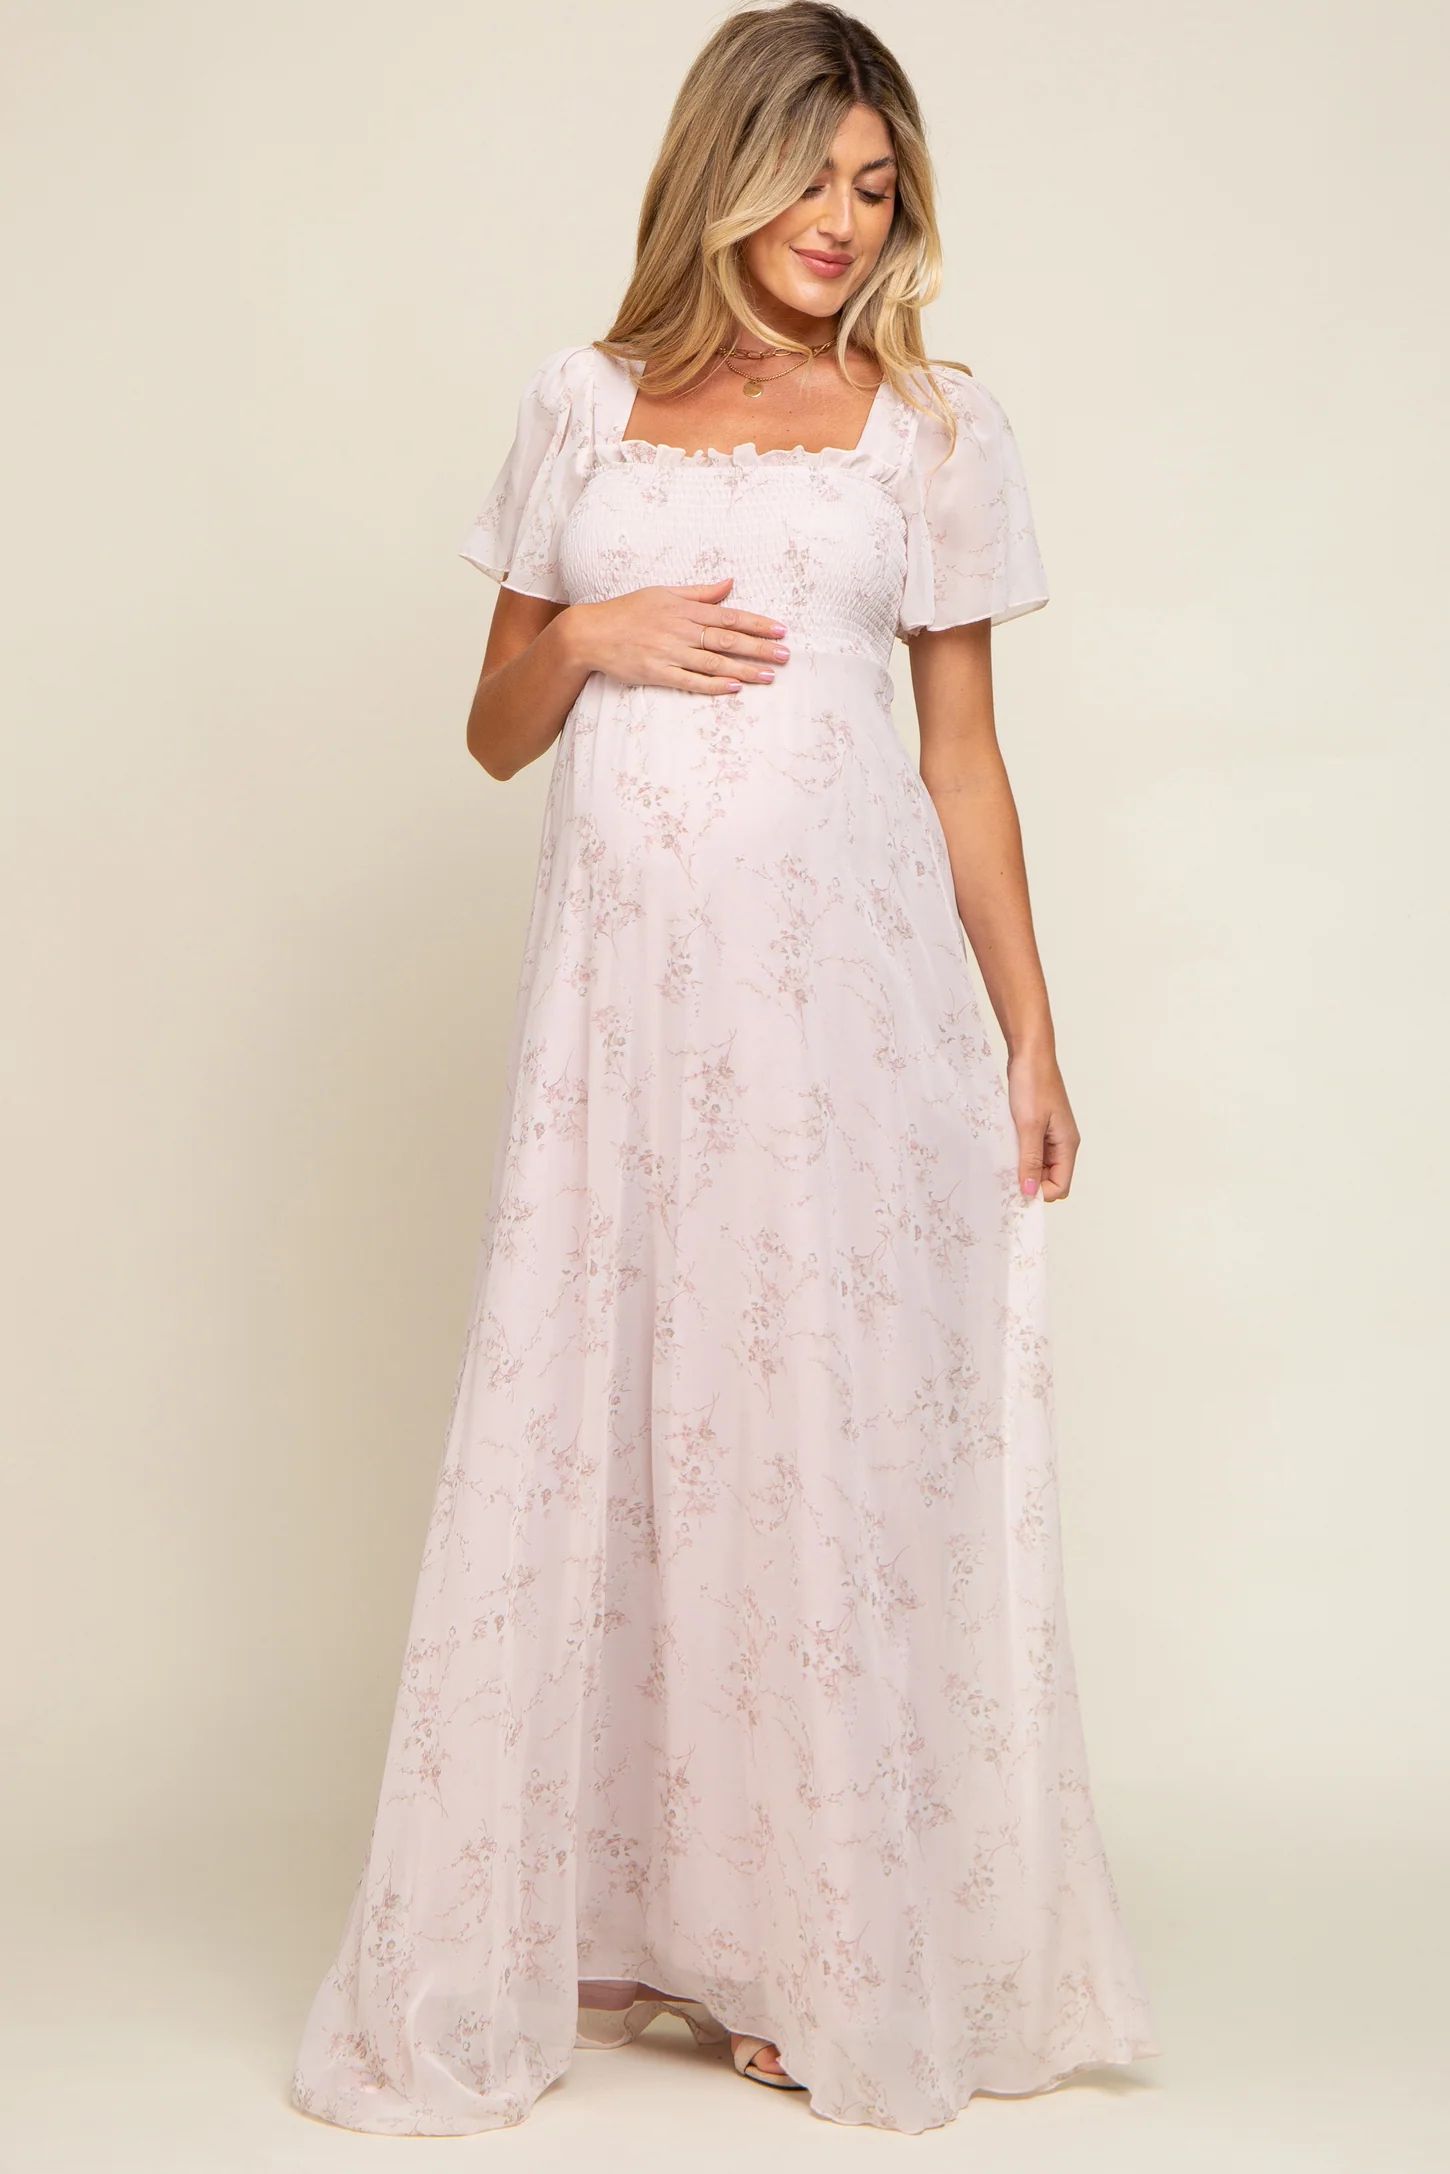 Light Pink Floral Smocked Chiffon Maternity Maxi Dress | PinkBlush Maternity